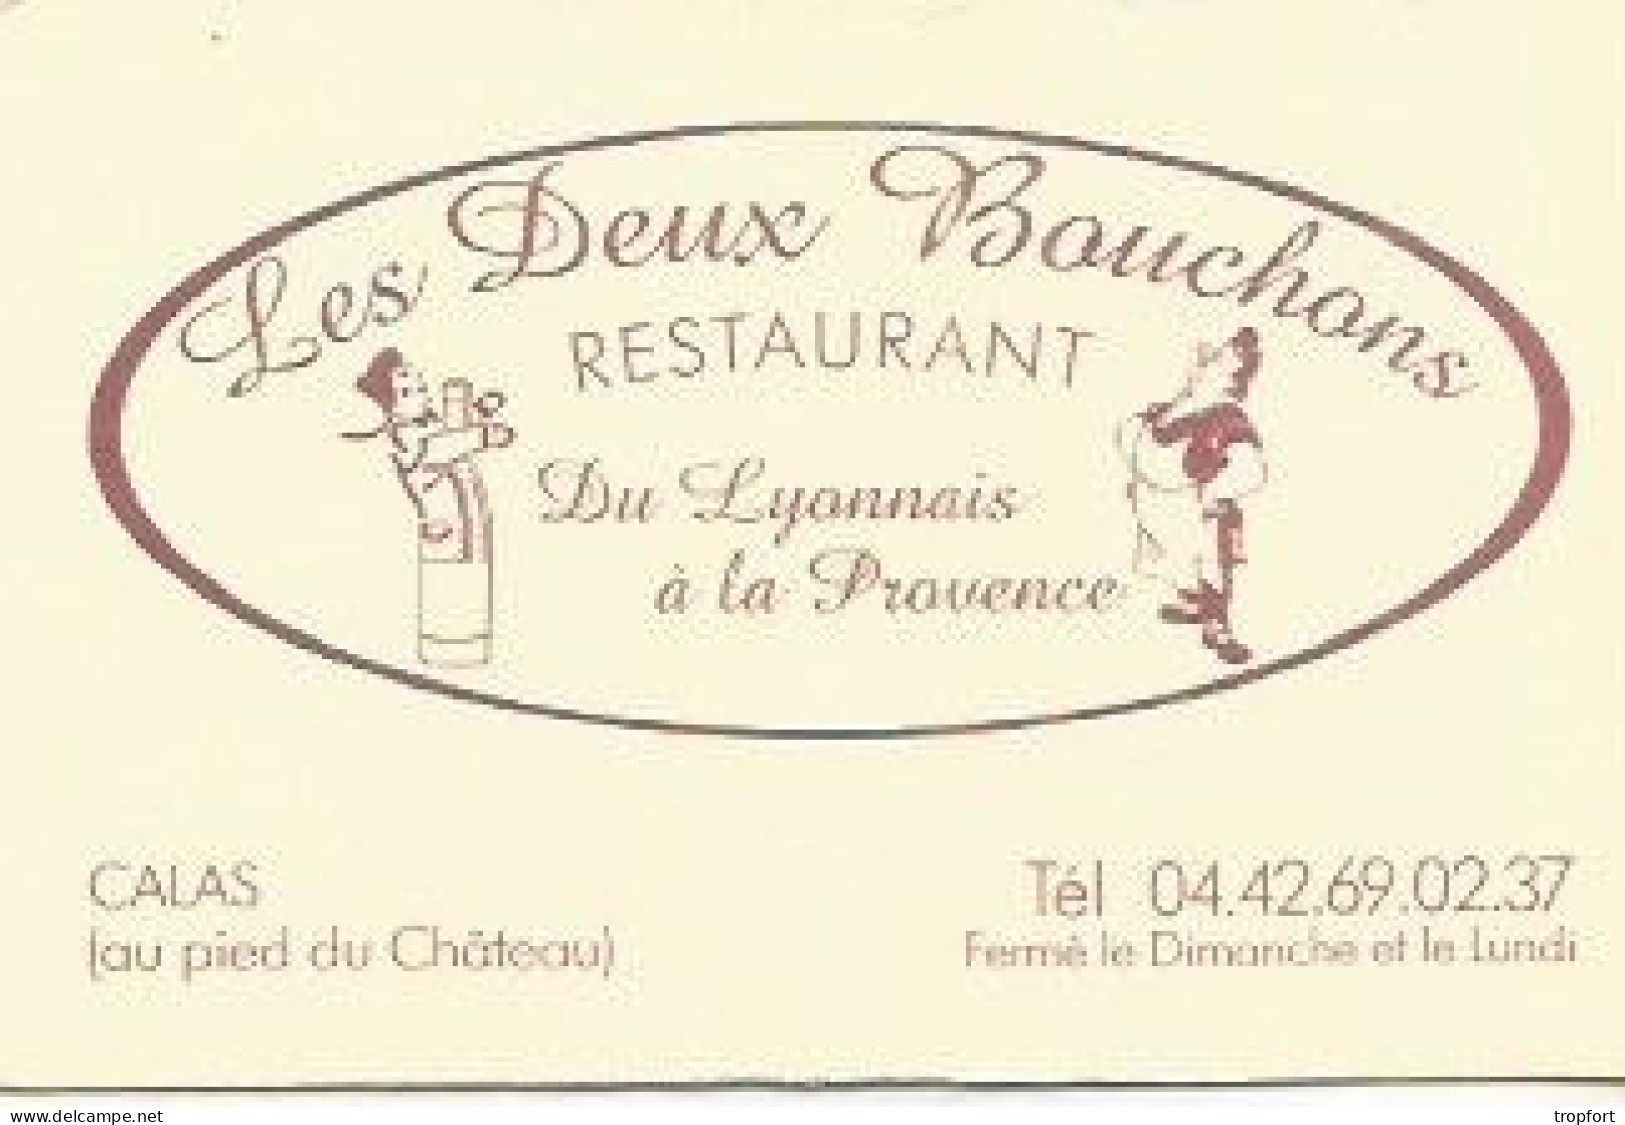 Carte De Visite Restaurant Les Deux Bouchons CALAS GUIGNOL - Visiting Cards